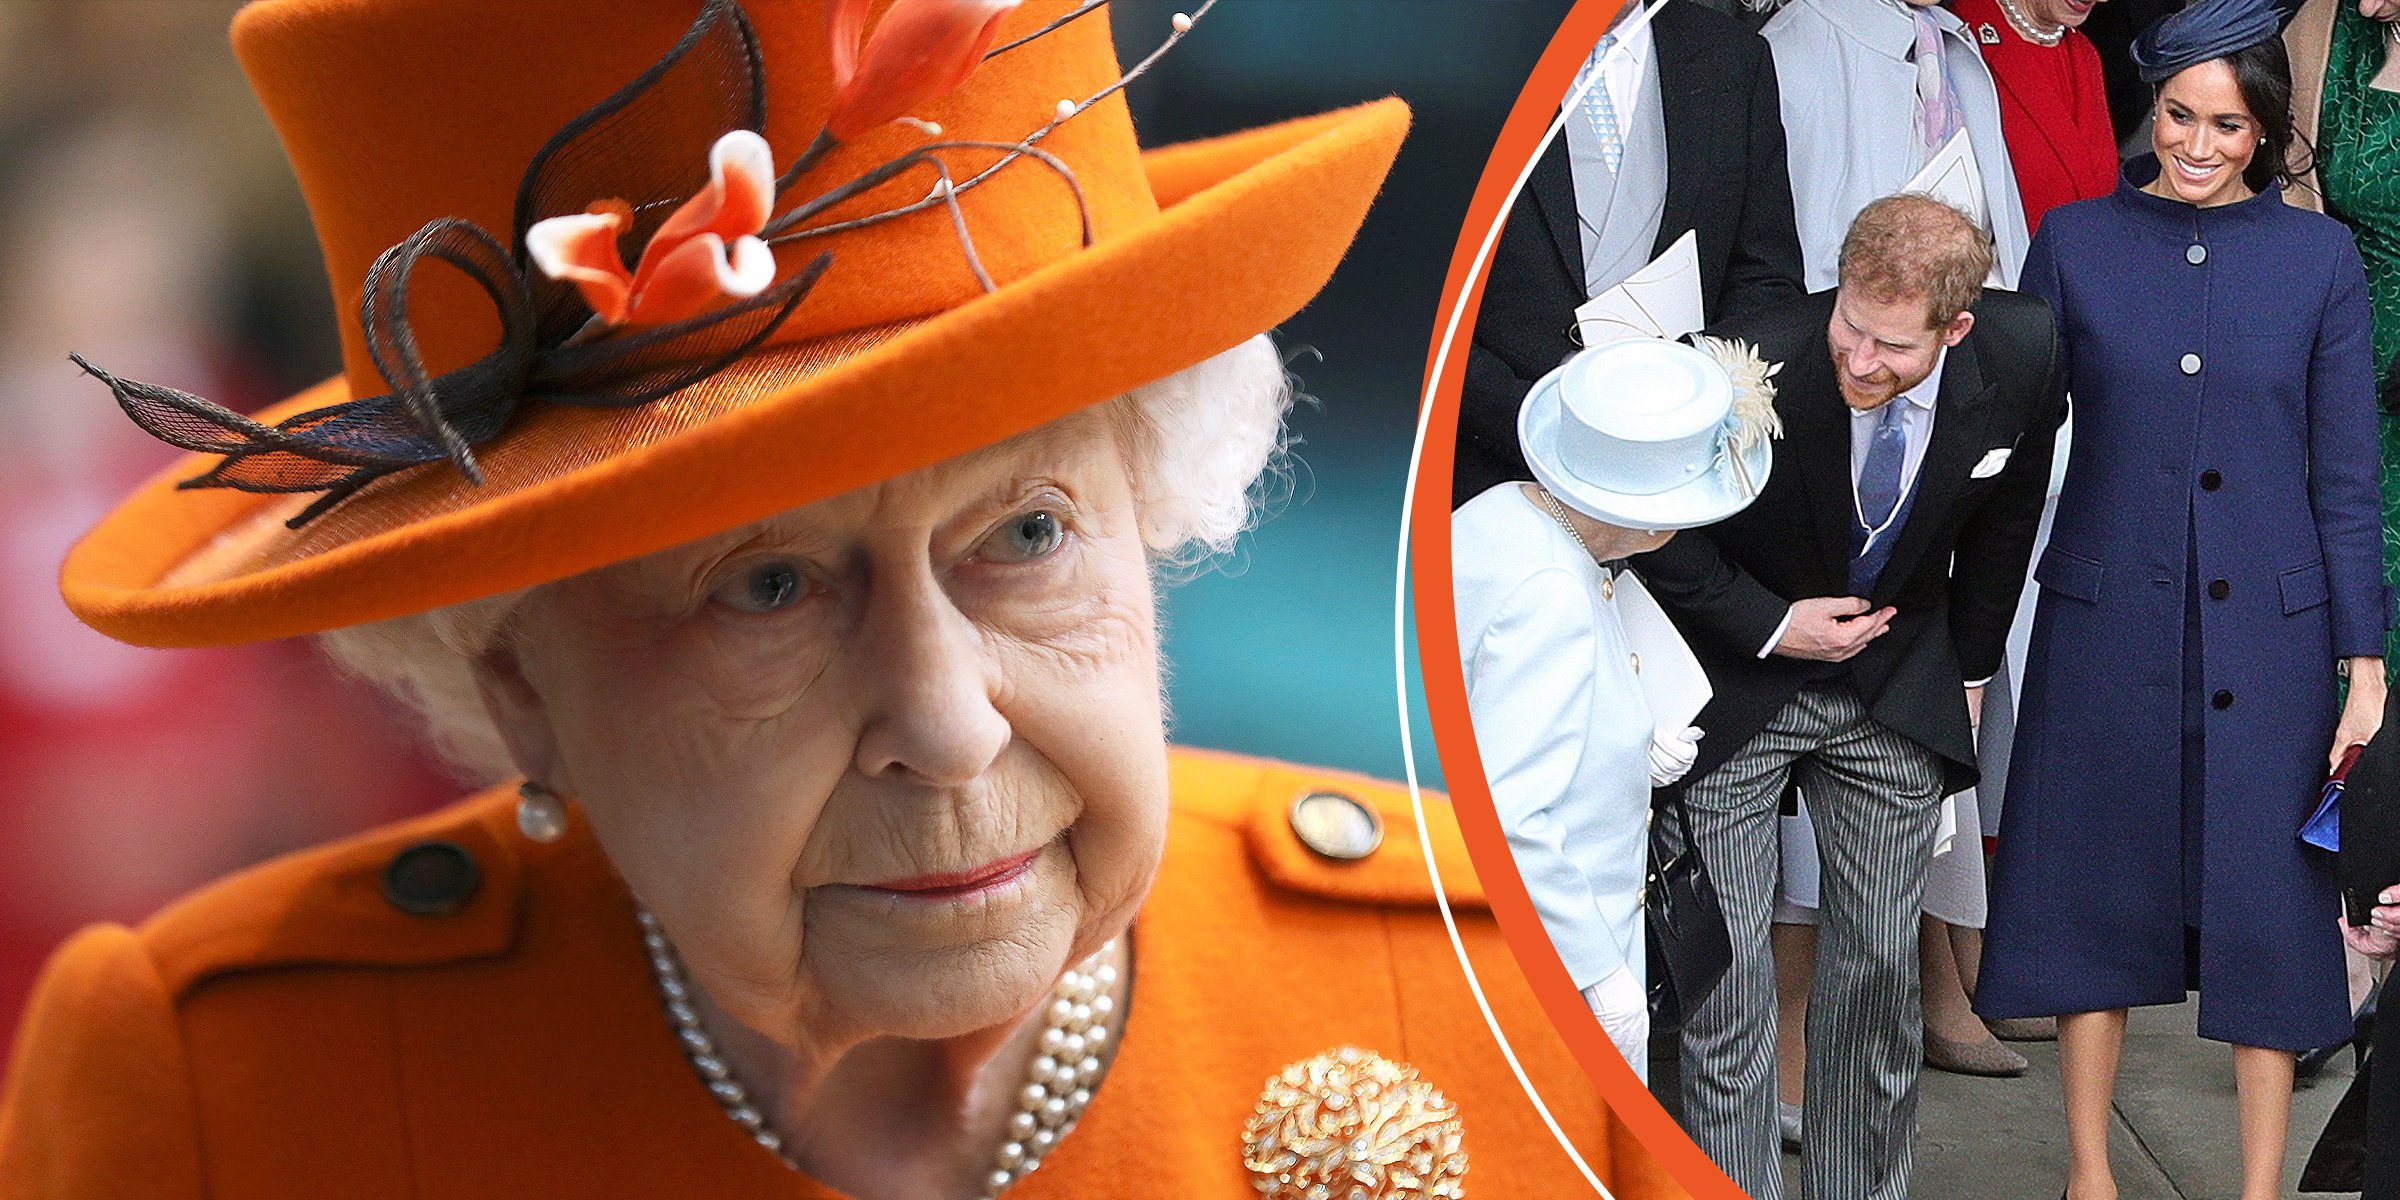 La reina Elizabeth II, el príncipe Harry y Meghan Markle. | Foto: Getty Images